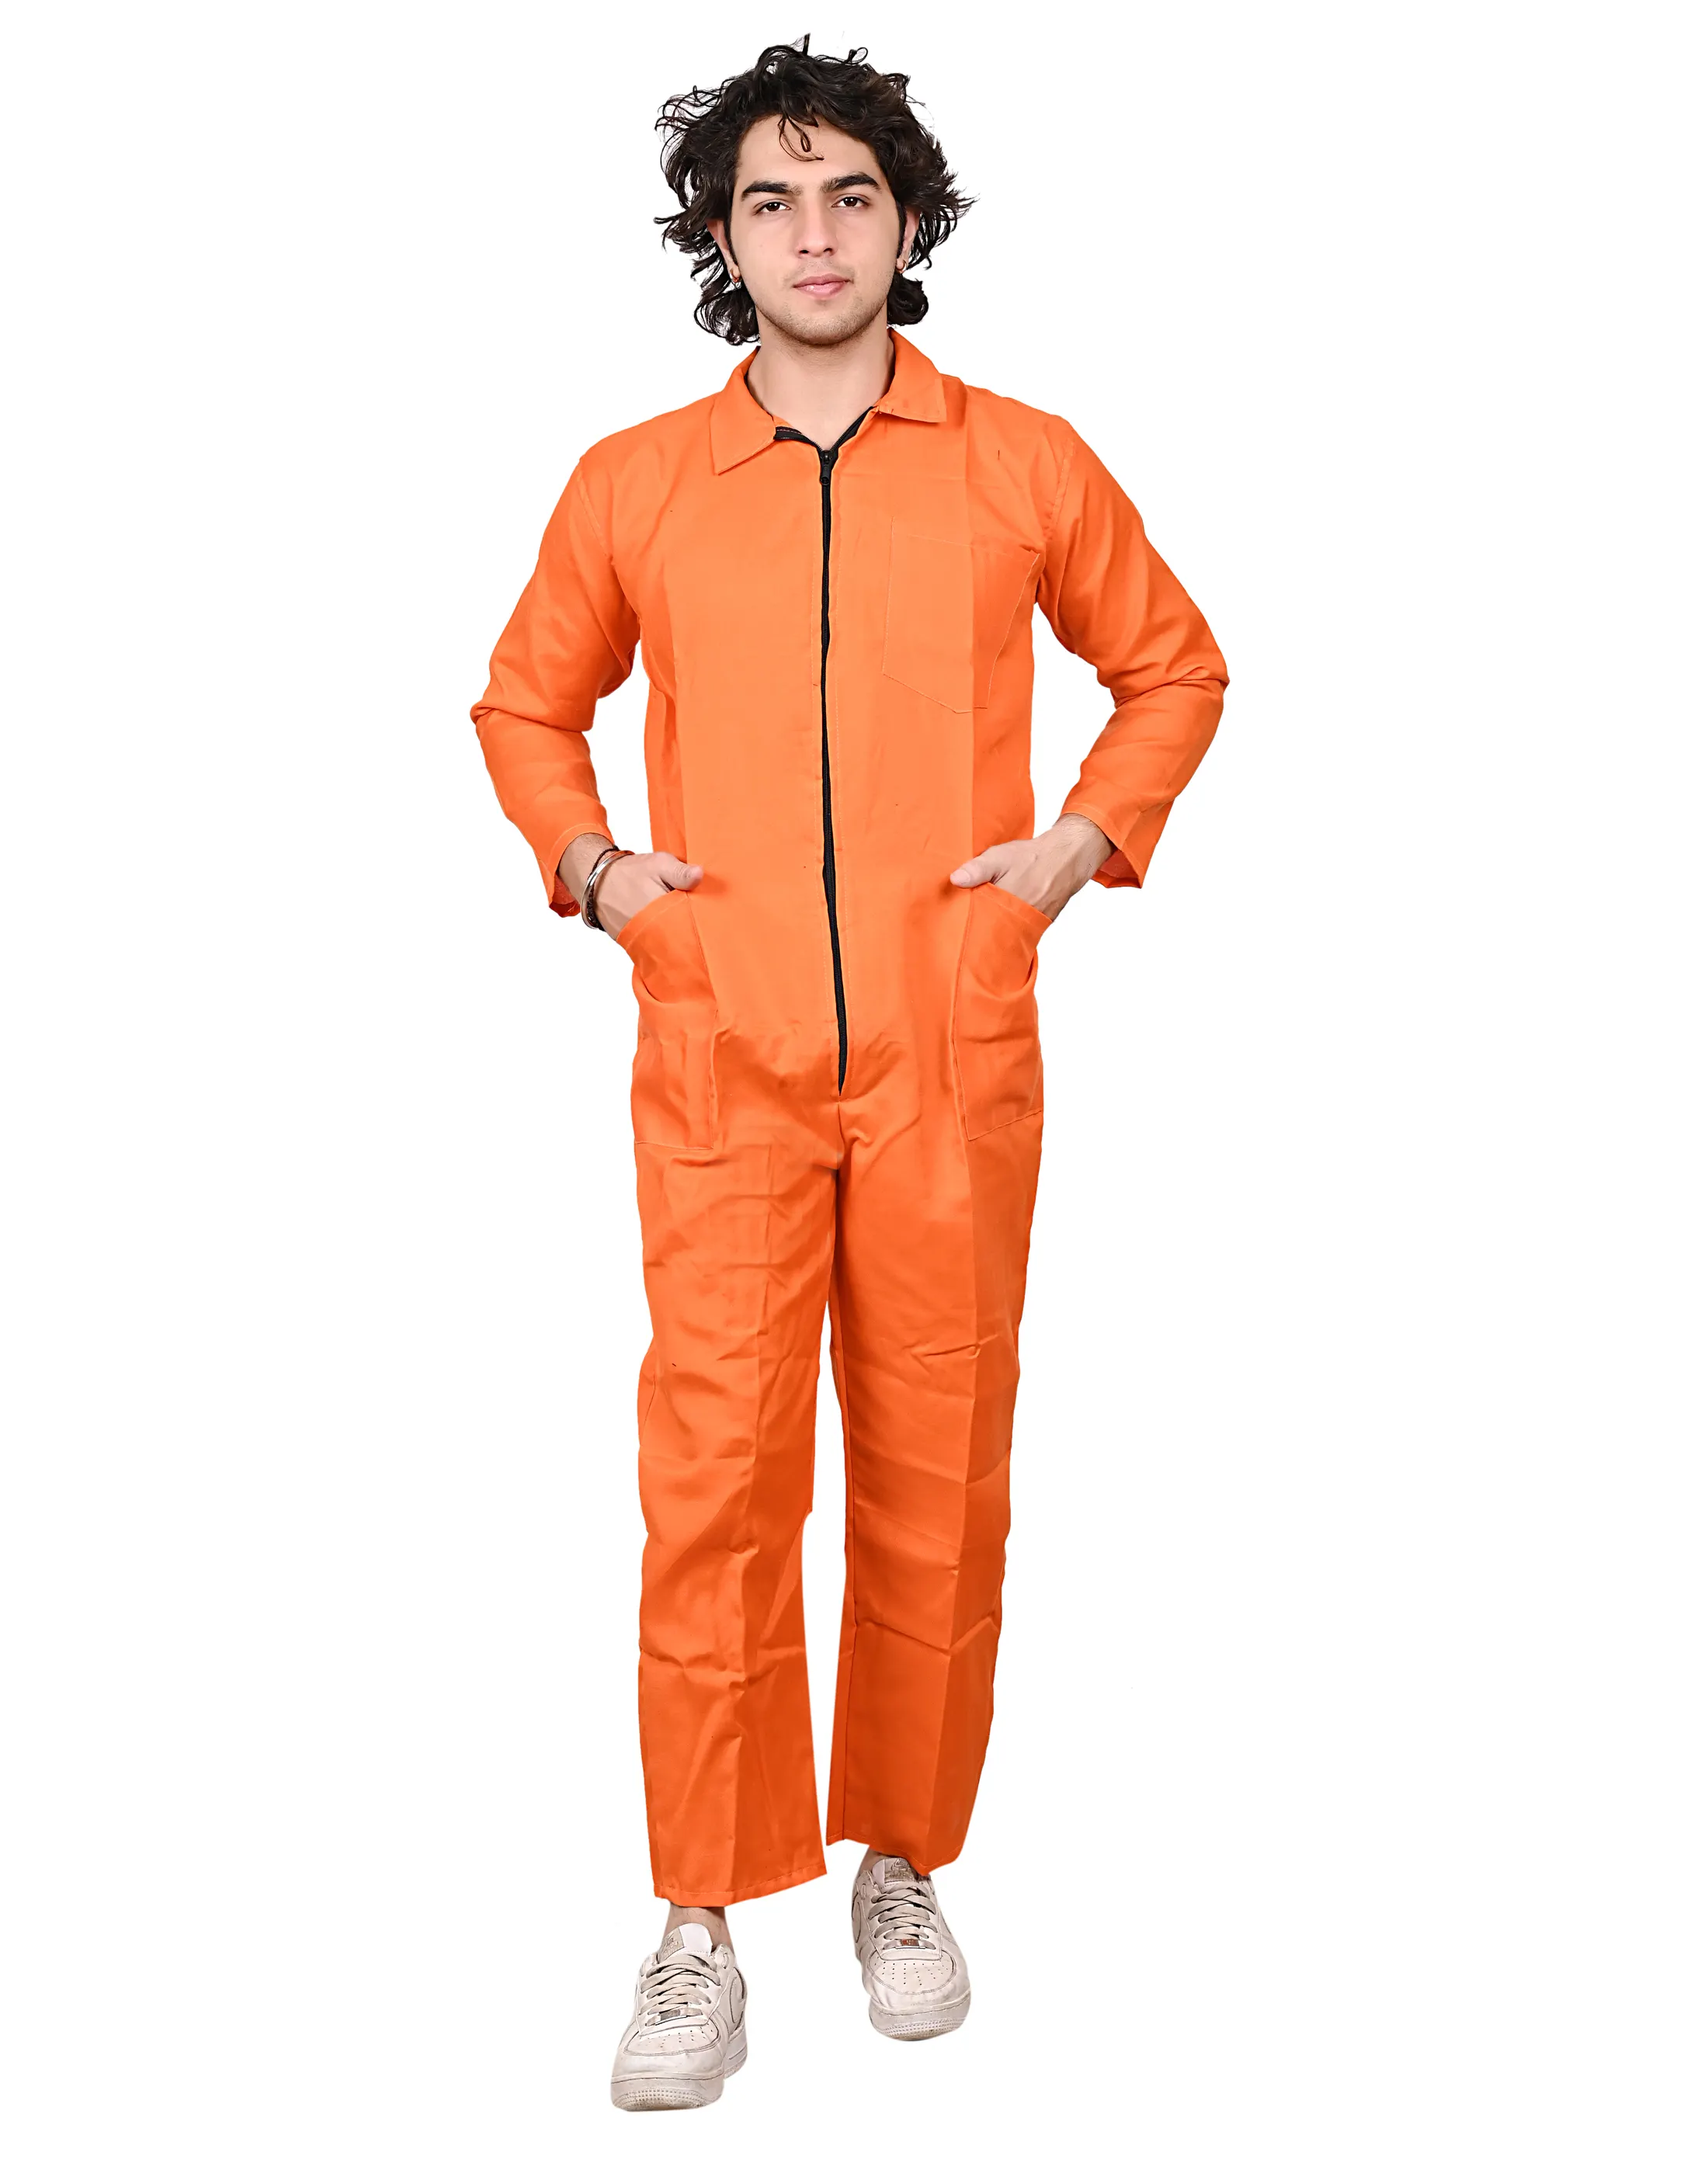 Beste Kwaliteit Terrycot Polyester Overall Ketelpak Werkkleding 150 Gsm (Oranje Kleur) Tegen Een Betaalbare Prijs